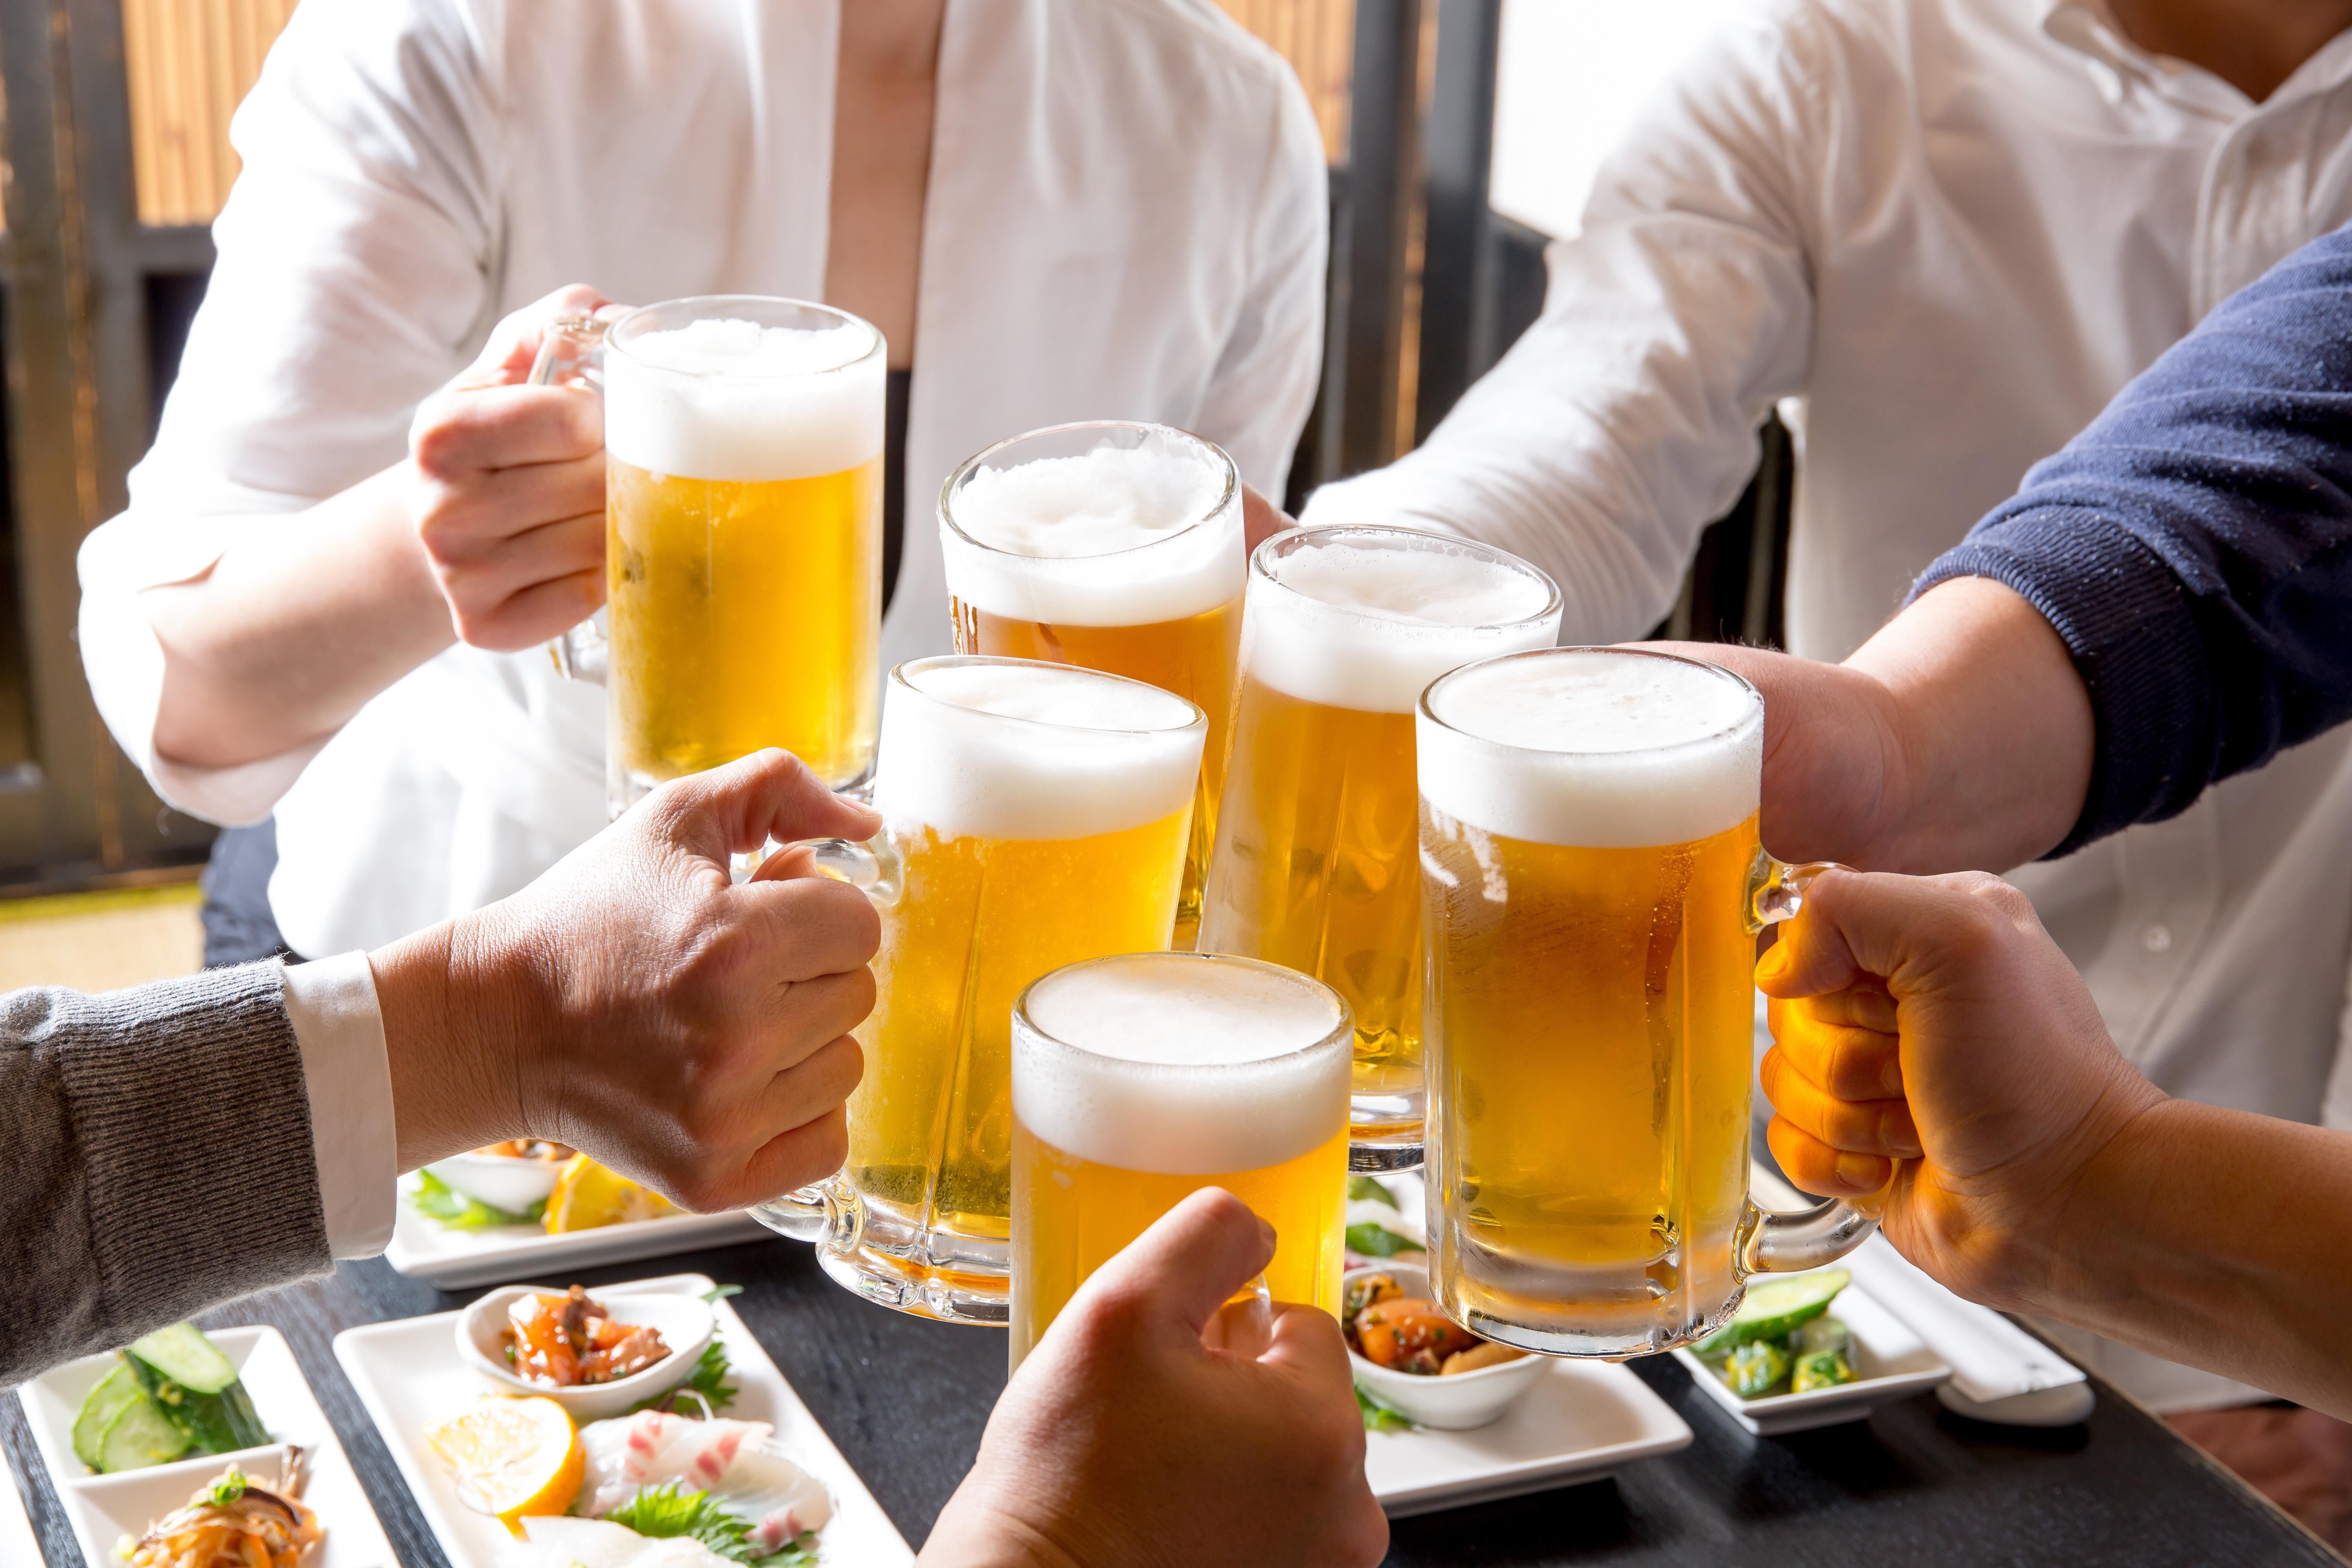 Te is vágysz már egy korsó csapolt sörre a barátokkal?